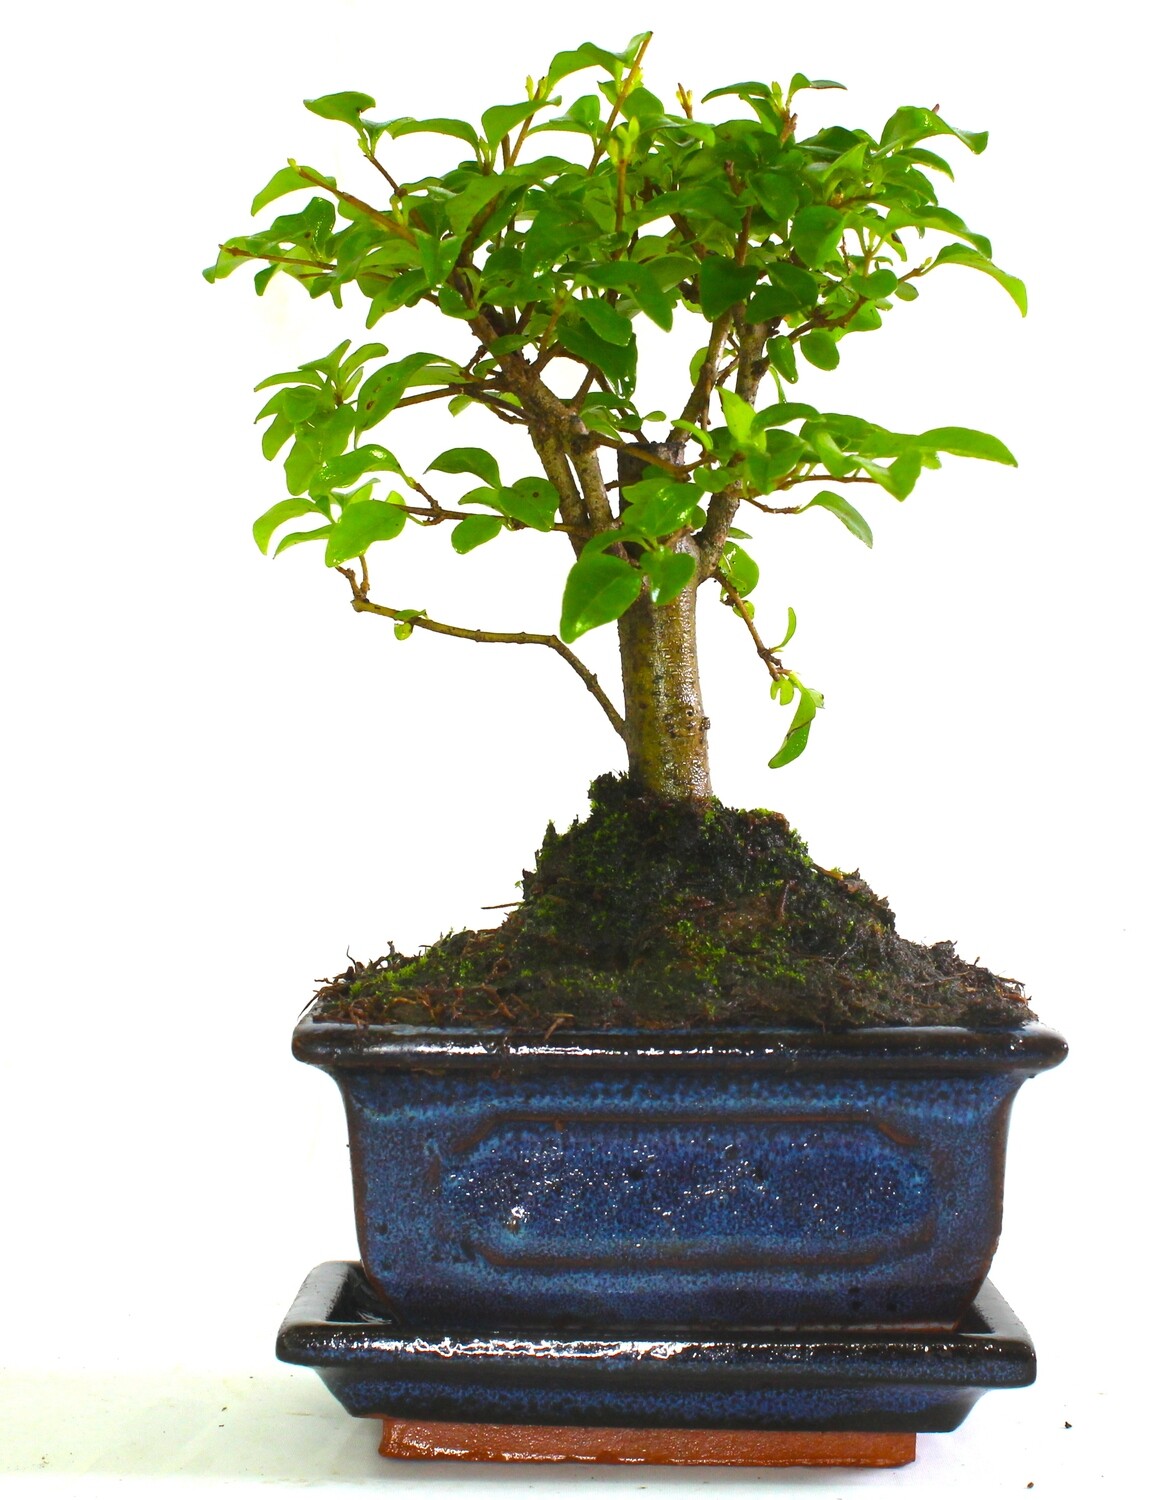 Ligustrum (Maidenhair Tree) Bonsai Tree Broom Style - supplied with ceramic drip